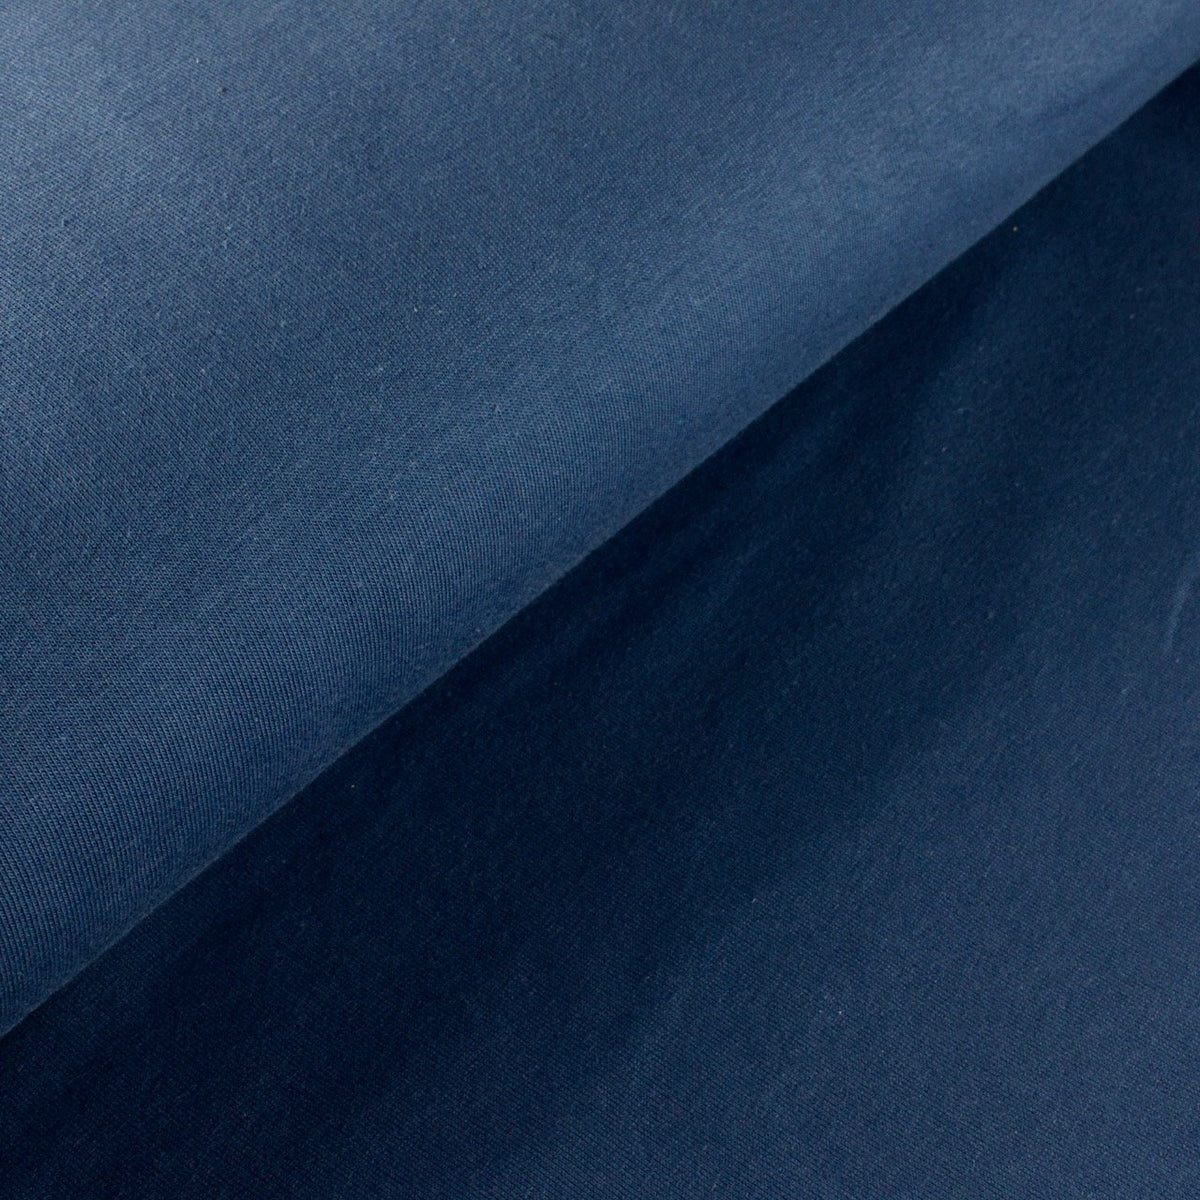 Cotton Jersey - Denim Blue - MaaiDesign